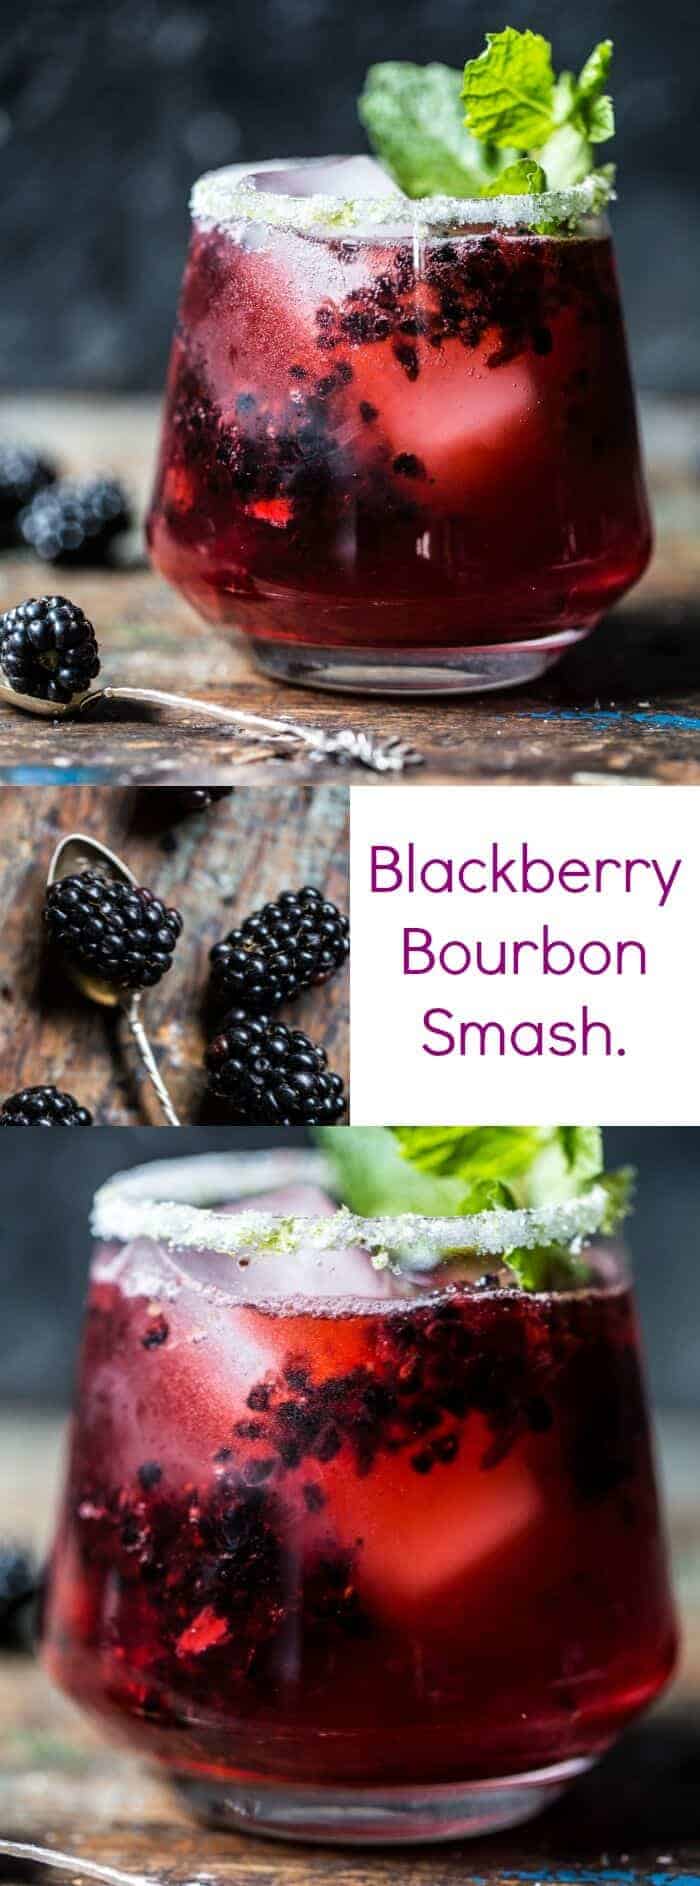 Blackberry Bourbon Smash | halfbakedharvest.com @hbharvest